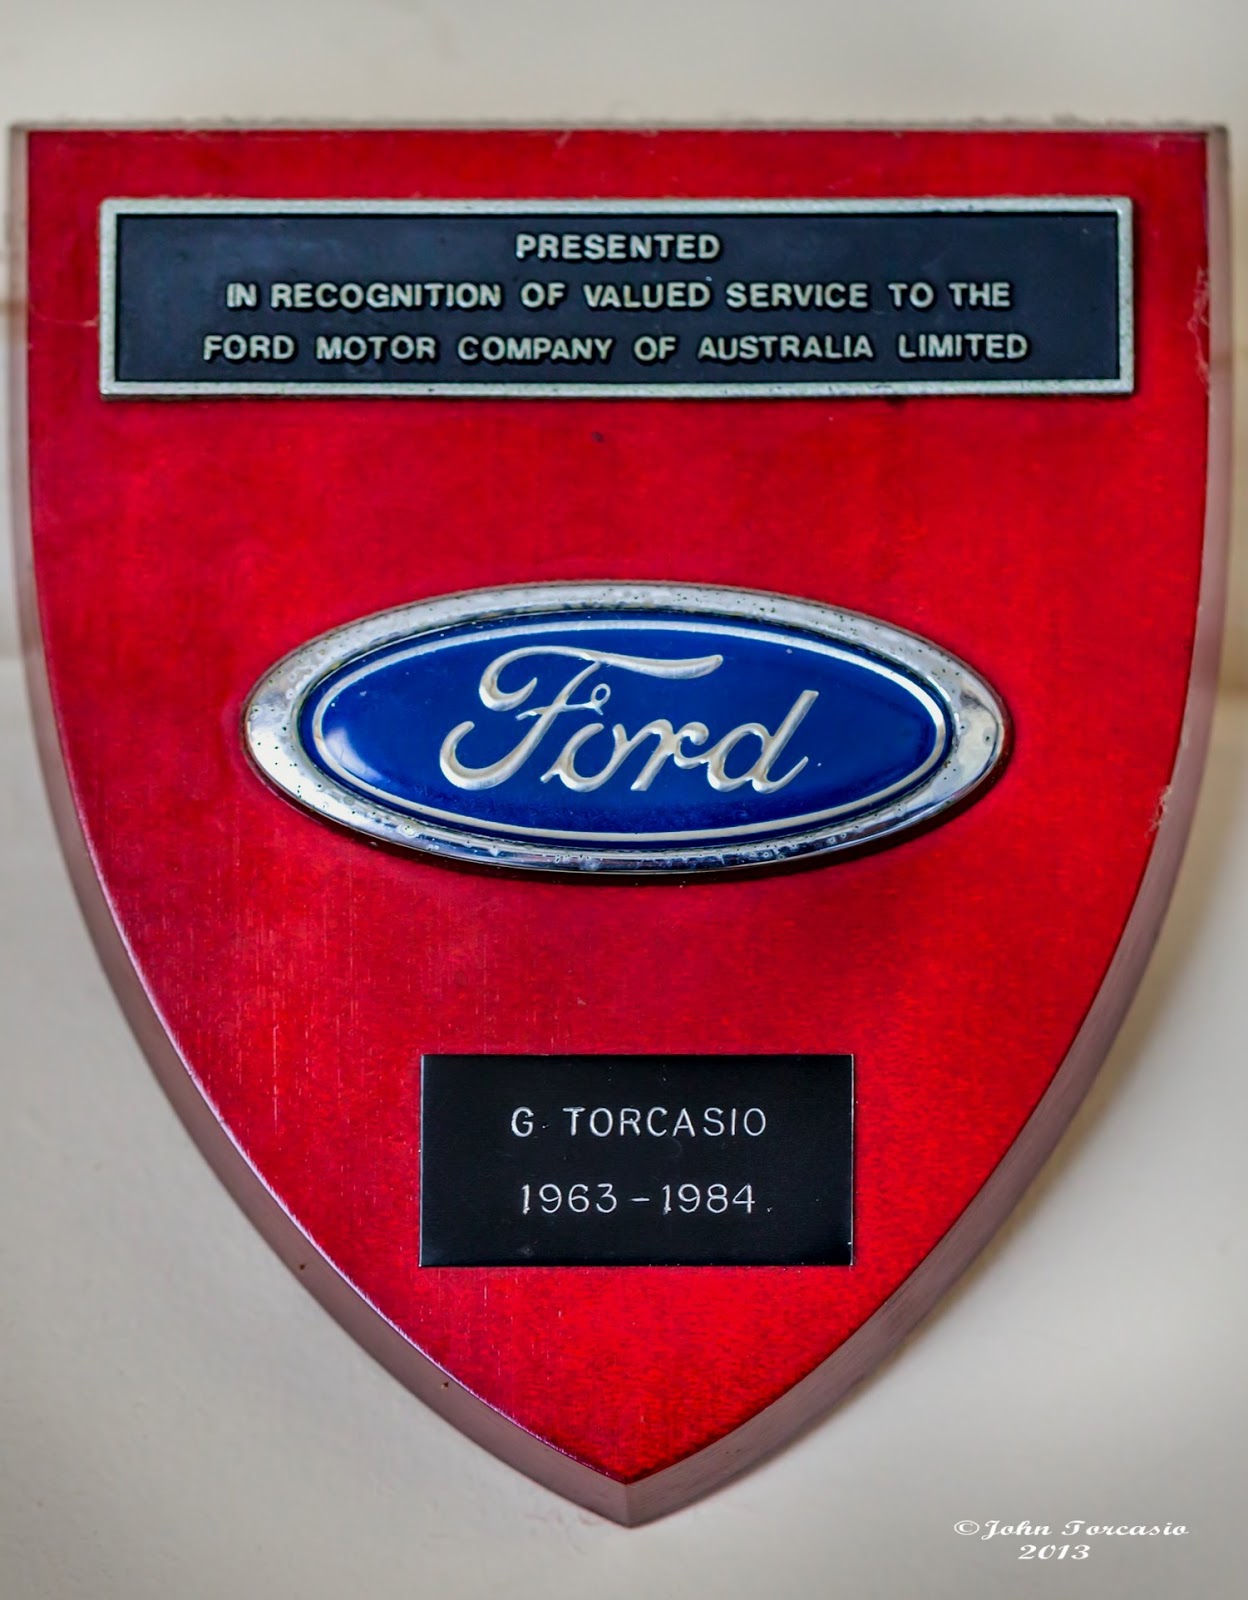 Giuseppe Torcasio: Ford Australia Award